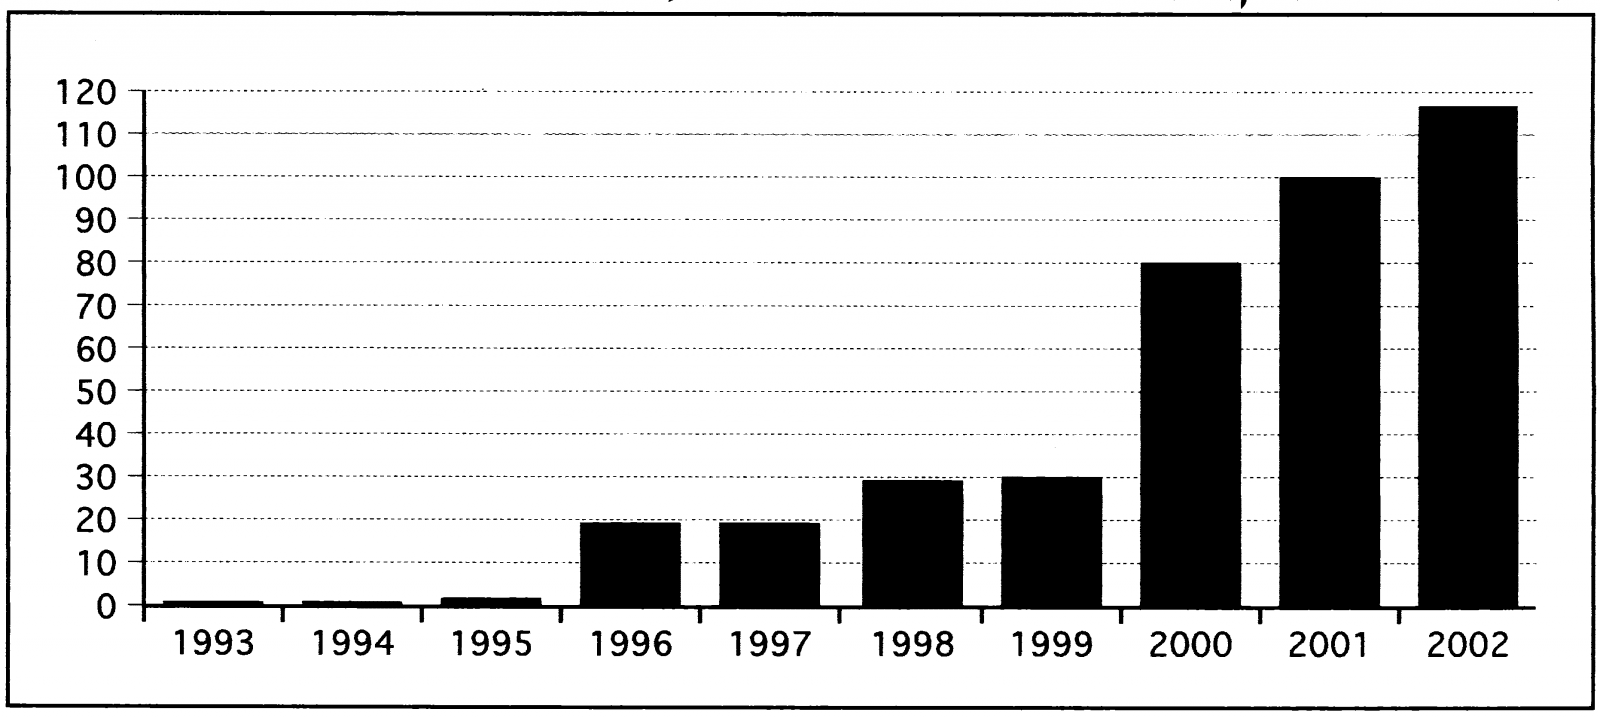 התפתחות מספר קרנות הנאמנות הסחירות הפועלות בארה"ב מאז 1993